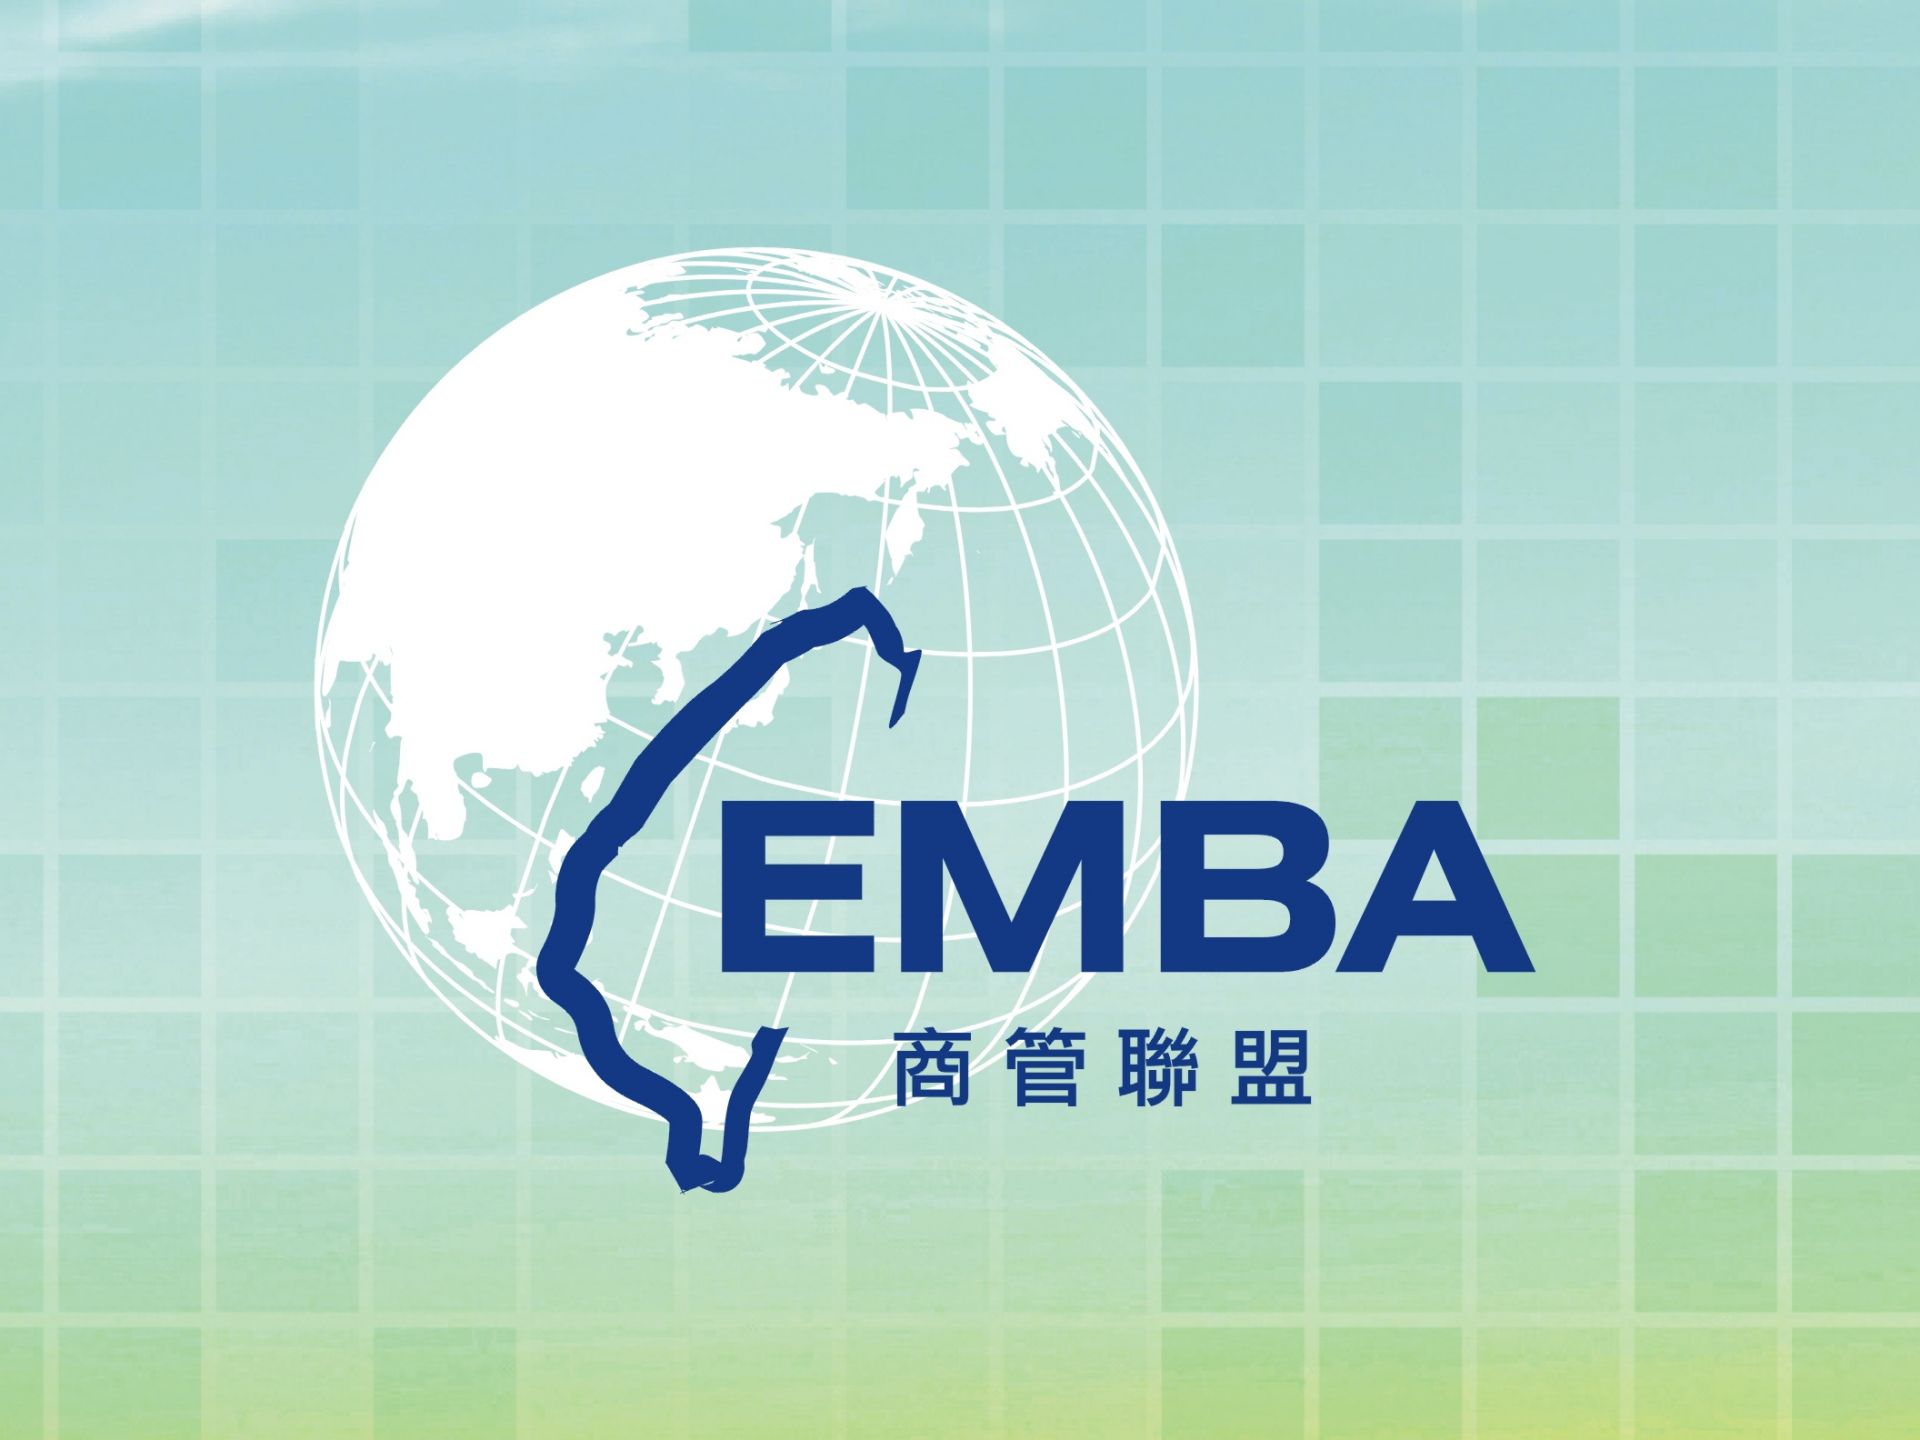 EMBA商管聯盟